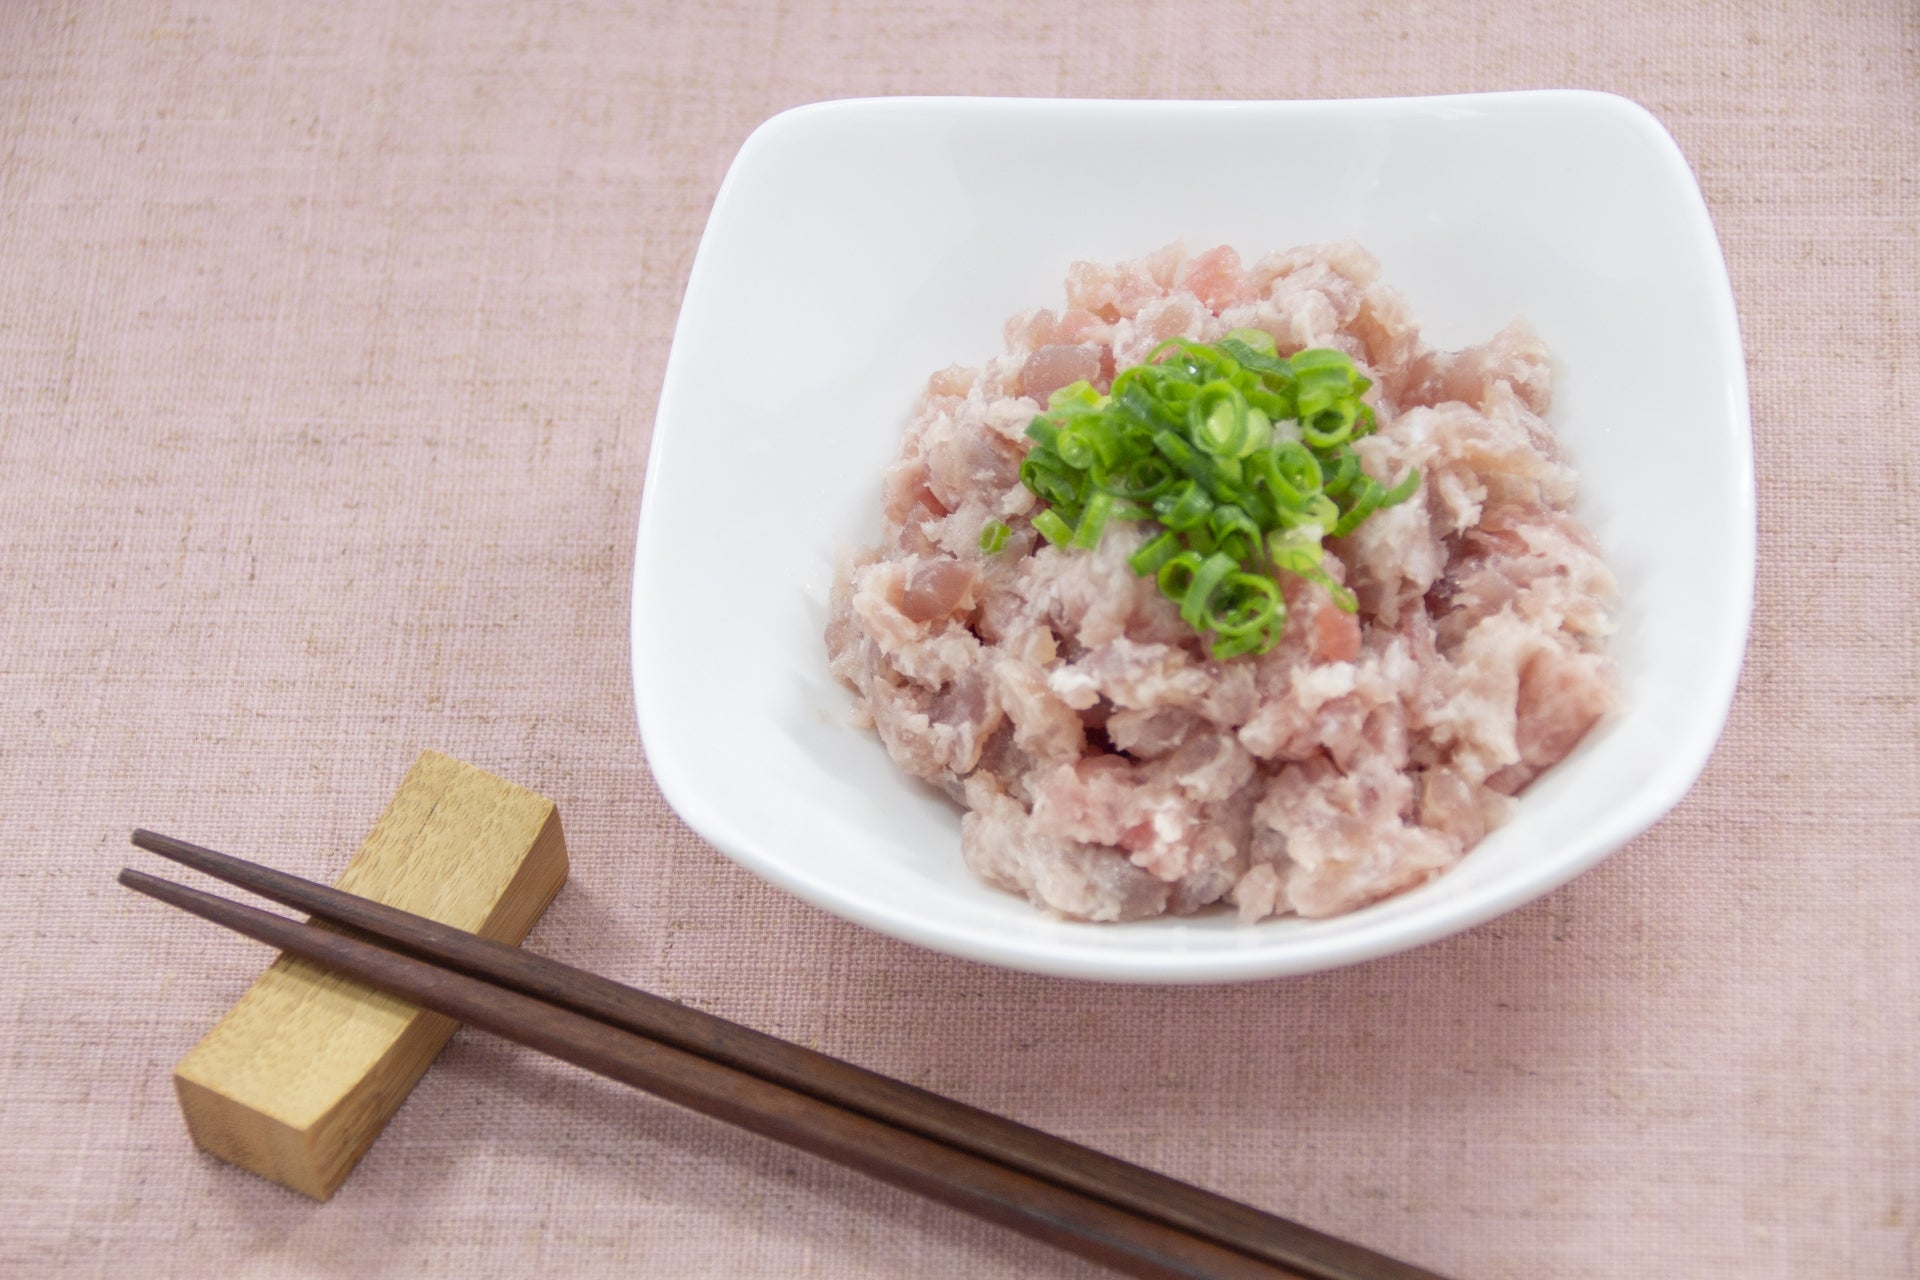 [Sashimi Grade] Negitoro (Minced Bluefin Tuna) from Misaki Fishing Port (100g)